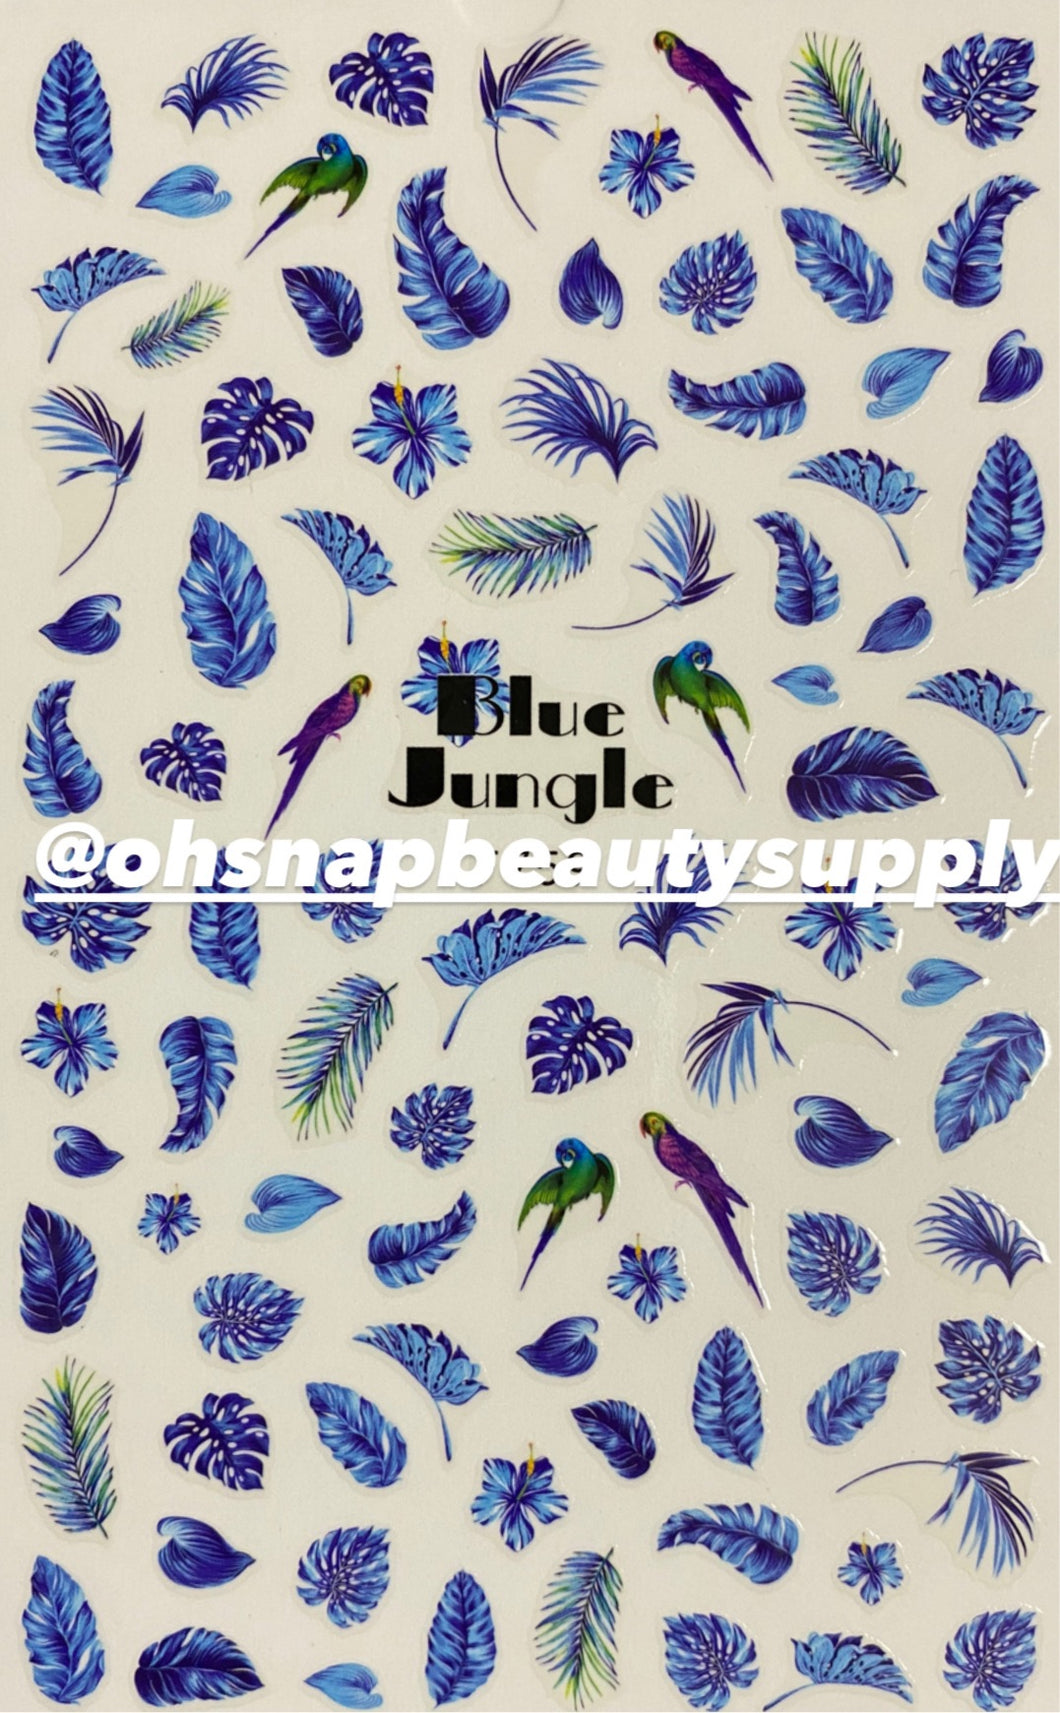 *BLUE  FLOWER LEAF BIRD F759 Sticker